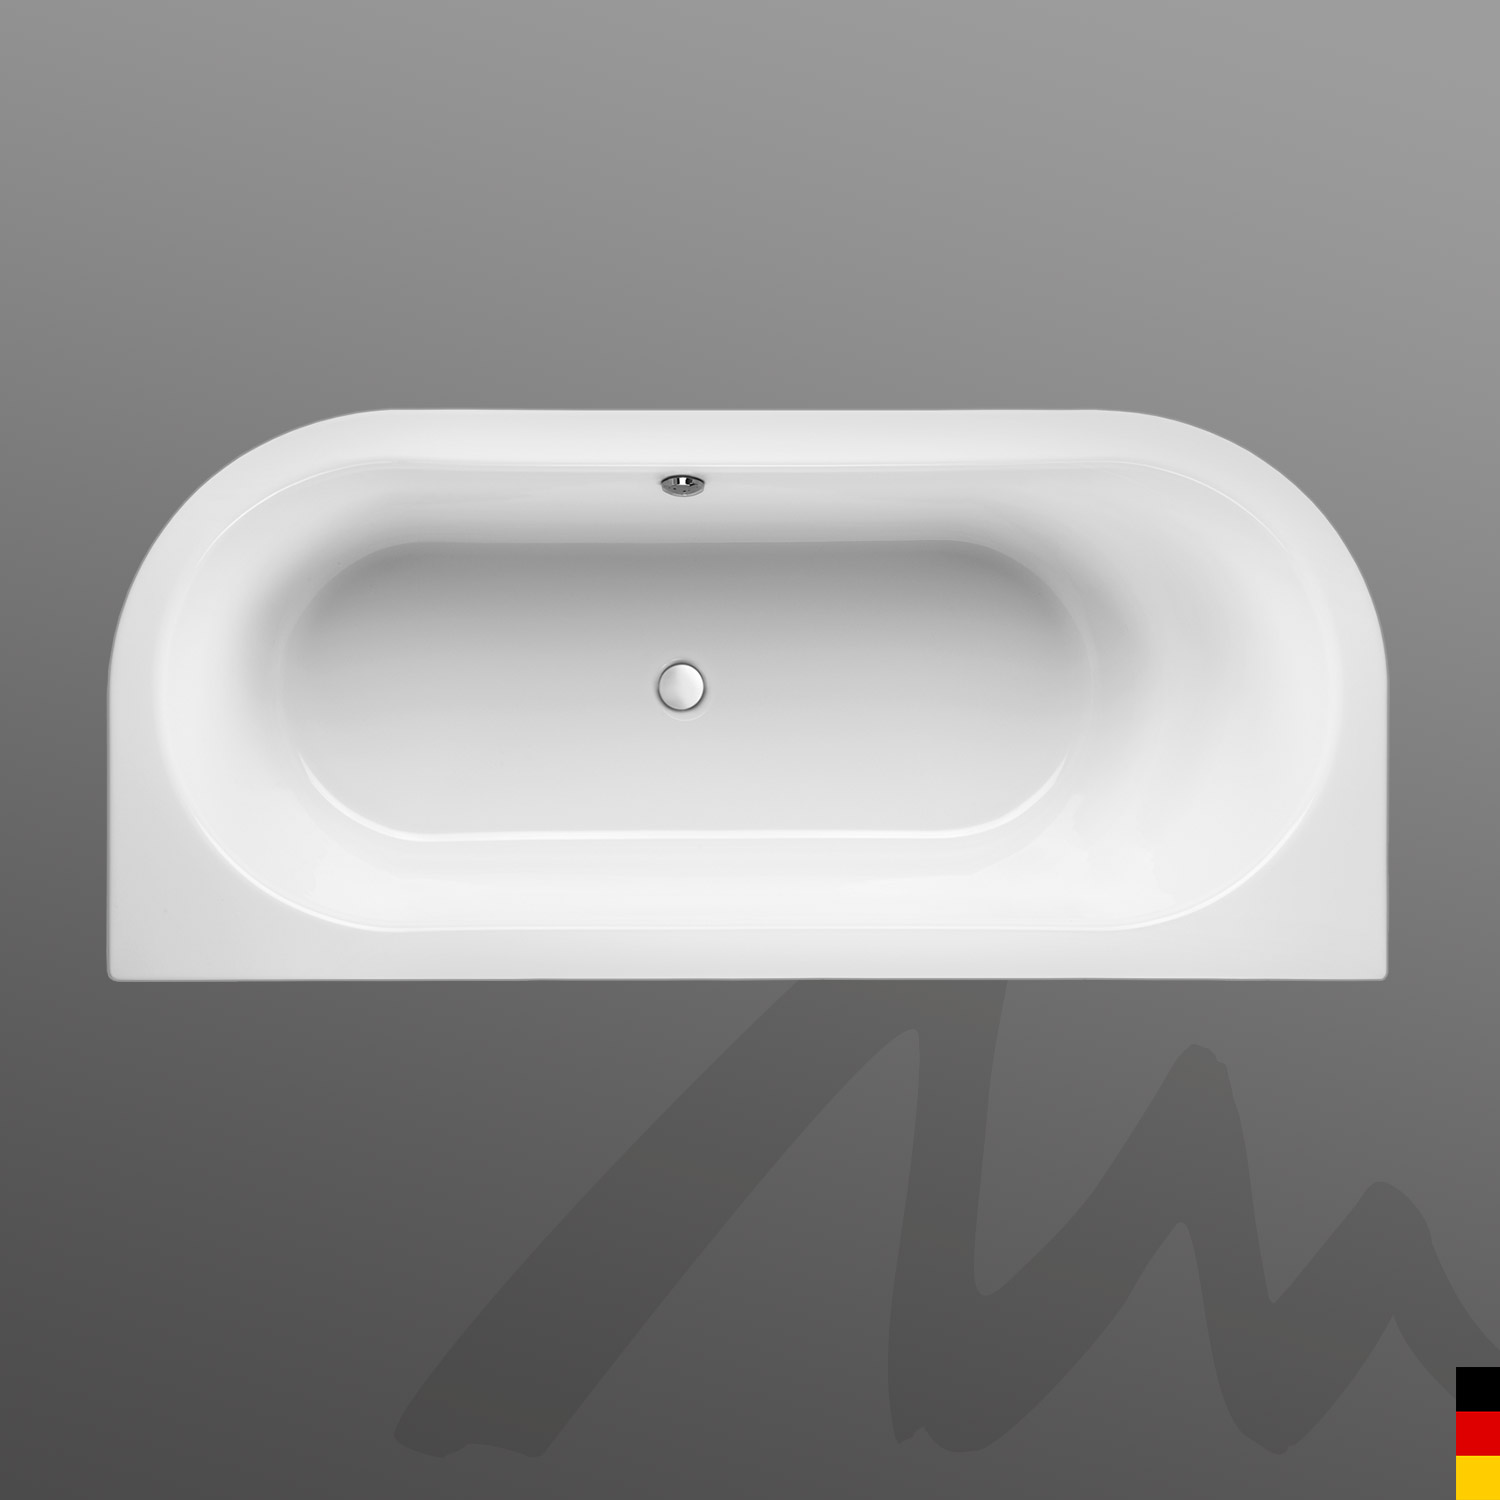 Mauersberger Badewanne Oval Primo 2 - 180/80 uno mit Acryl-Schürze/Panel  180x80x45  Farbe:weiß